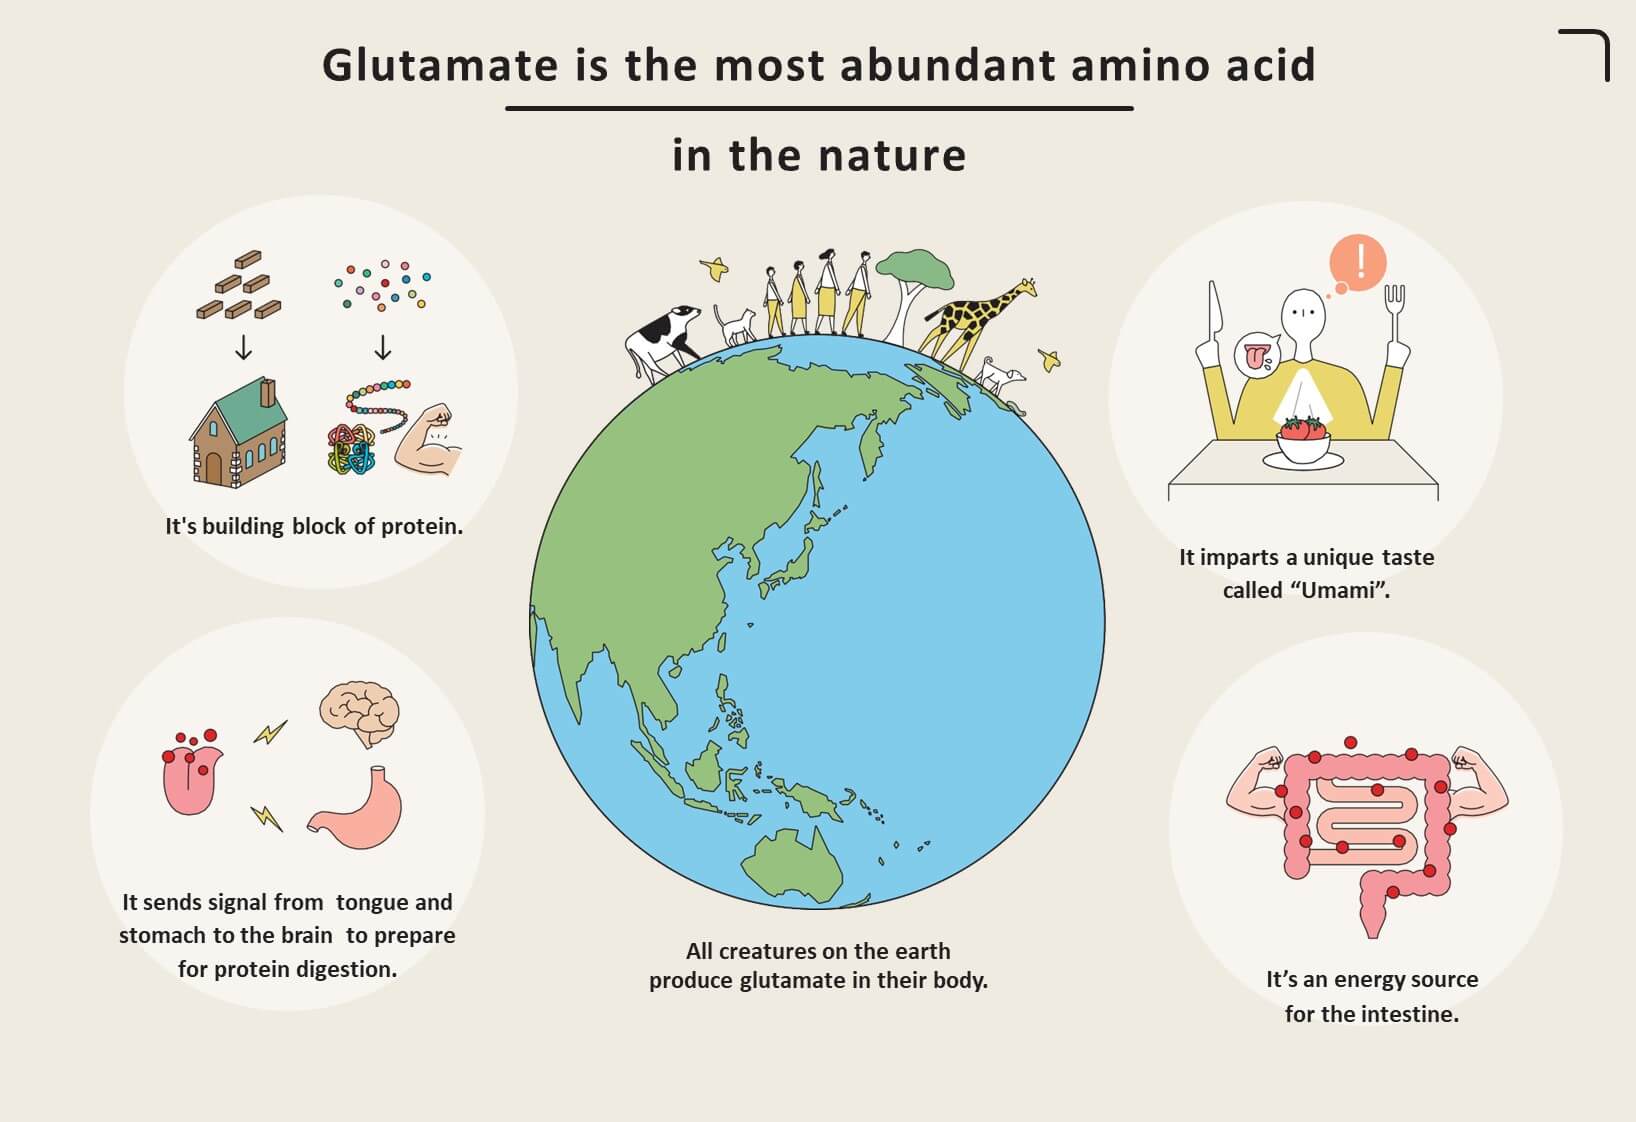 Le glutamate est l'acide aminé le plus abondant dans la nature